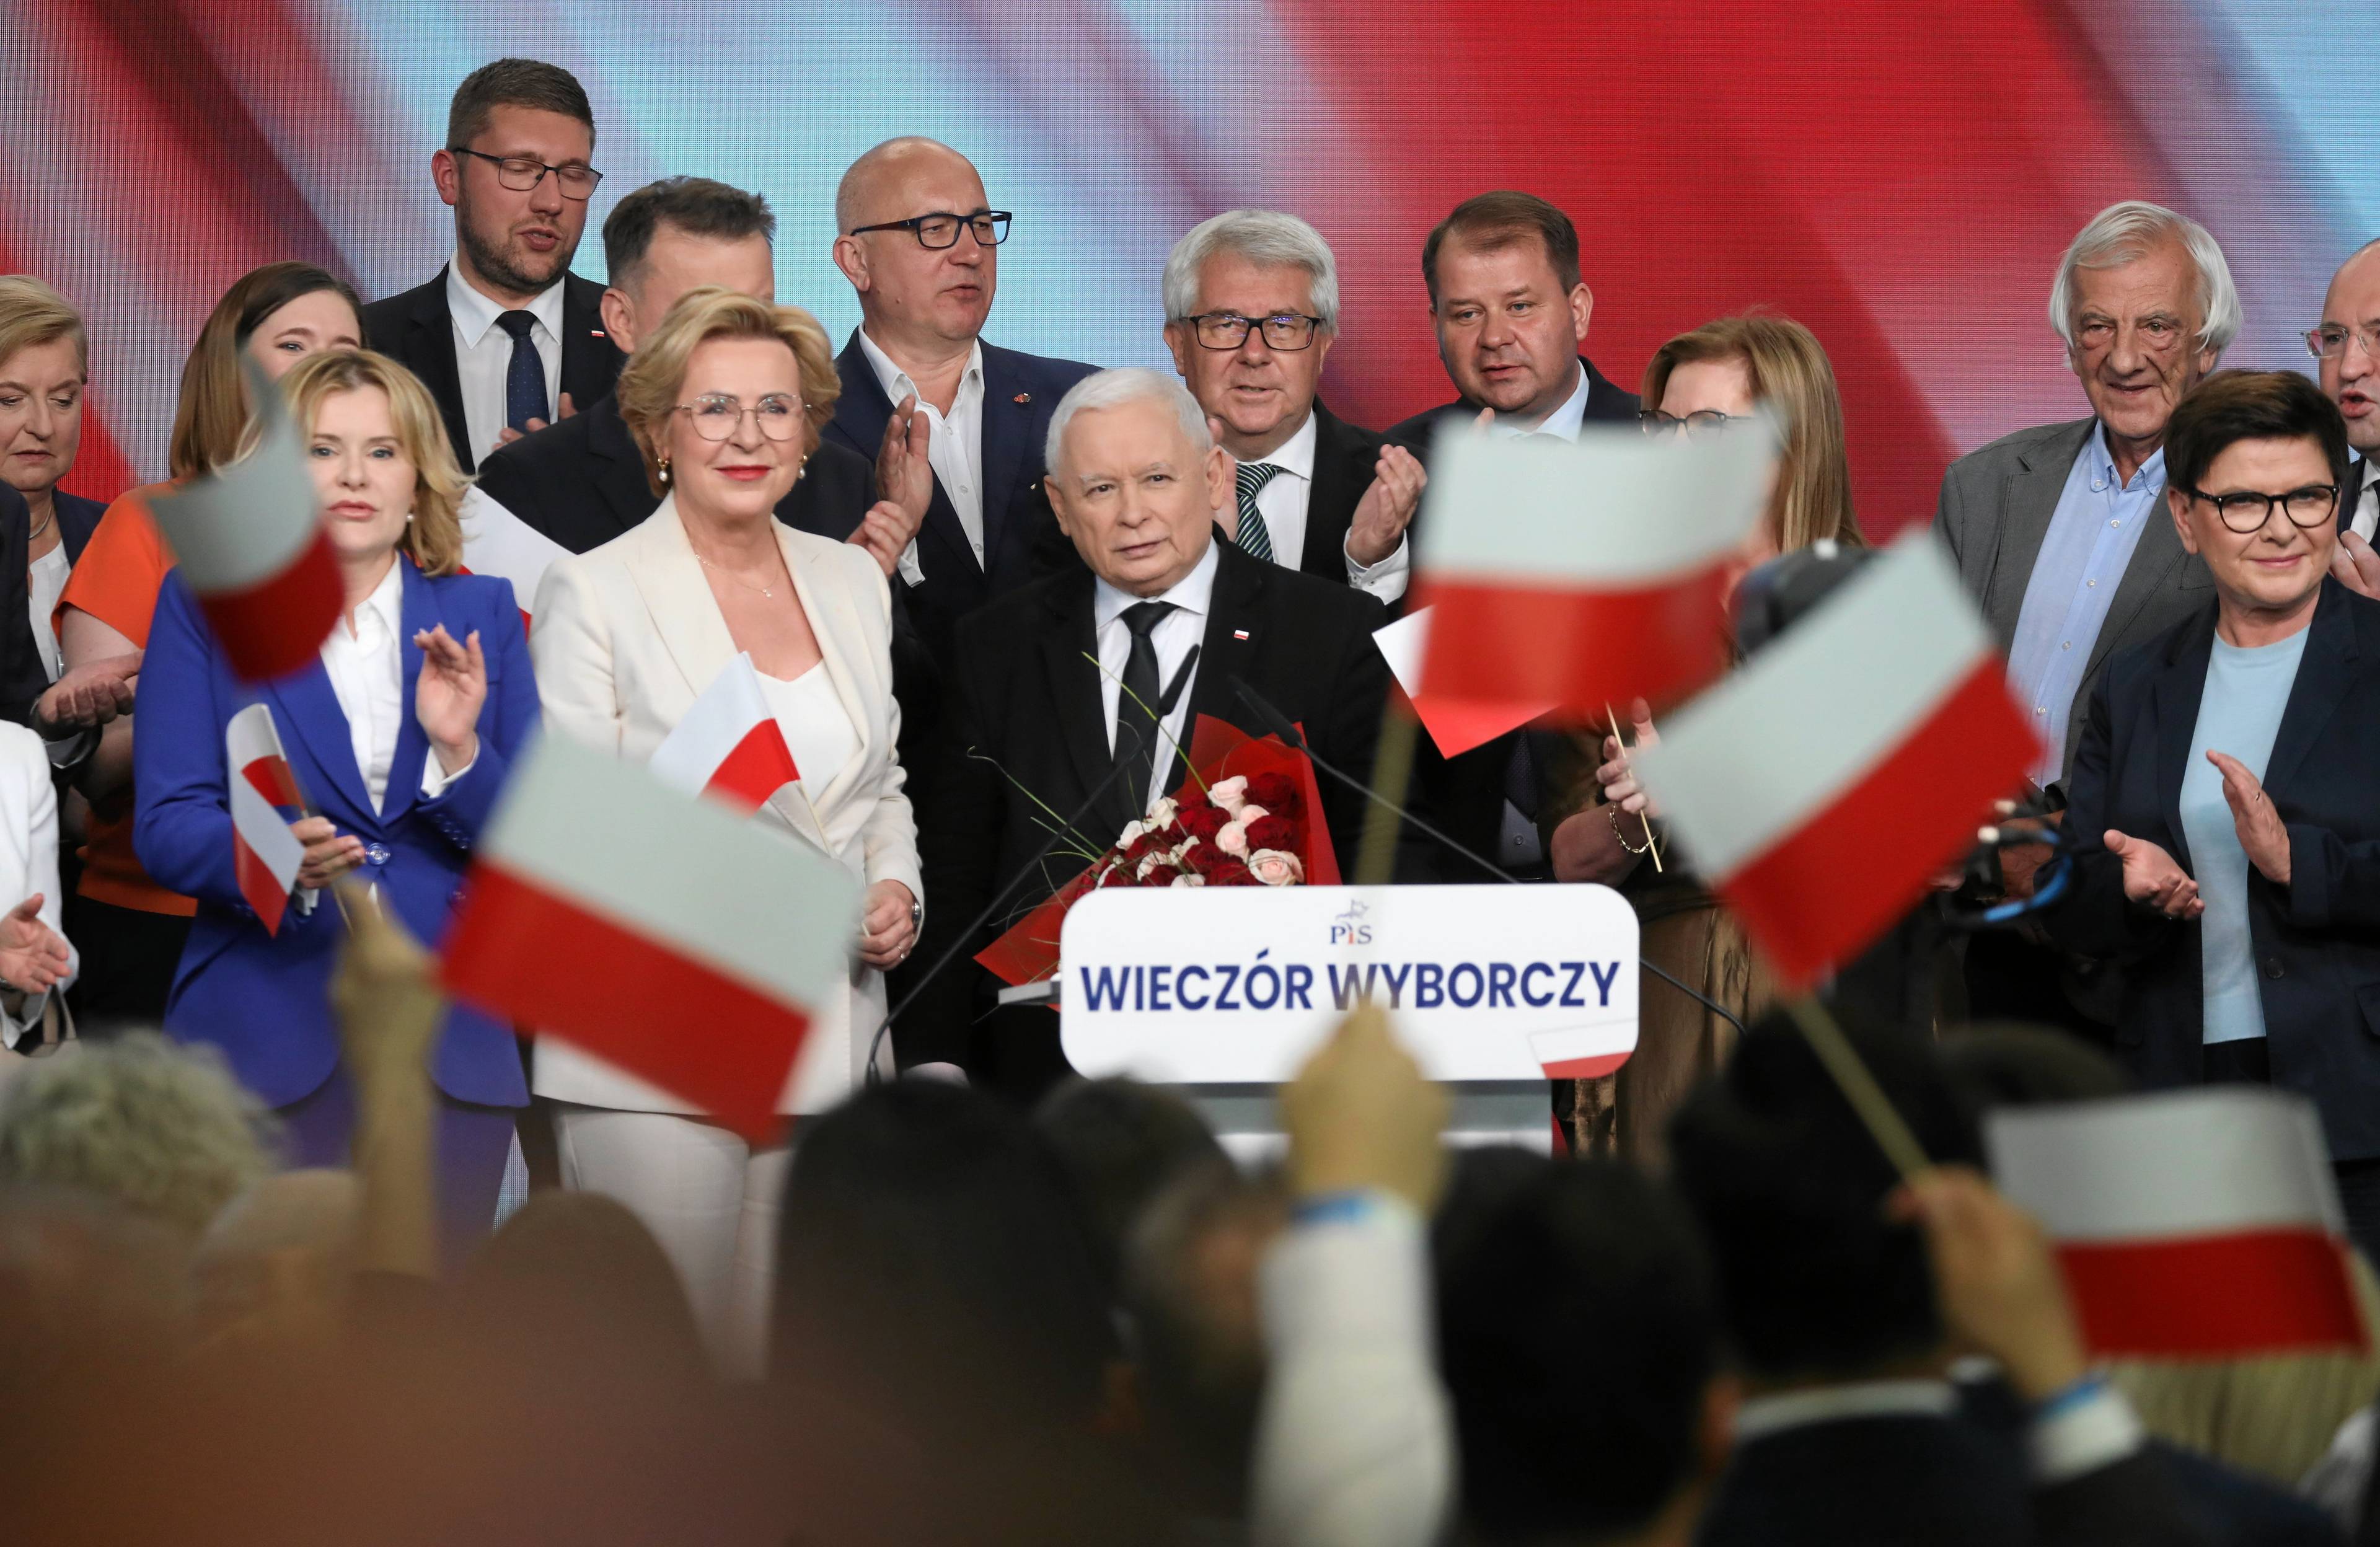 Najważniejsi politycy PiS na scenie w trakcie wieczoru wyborczego, na pierwszym planie za mikrofonem Jarosław Kaczyński